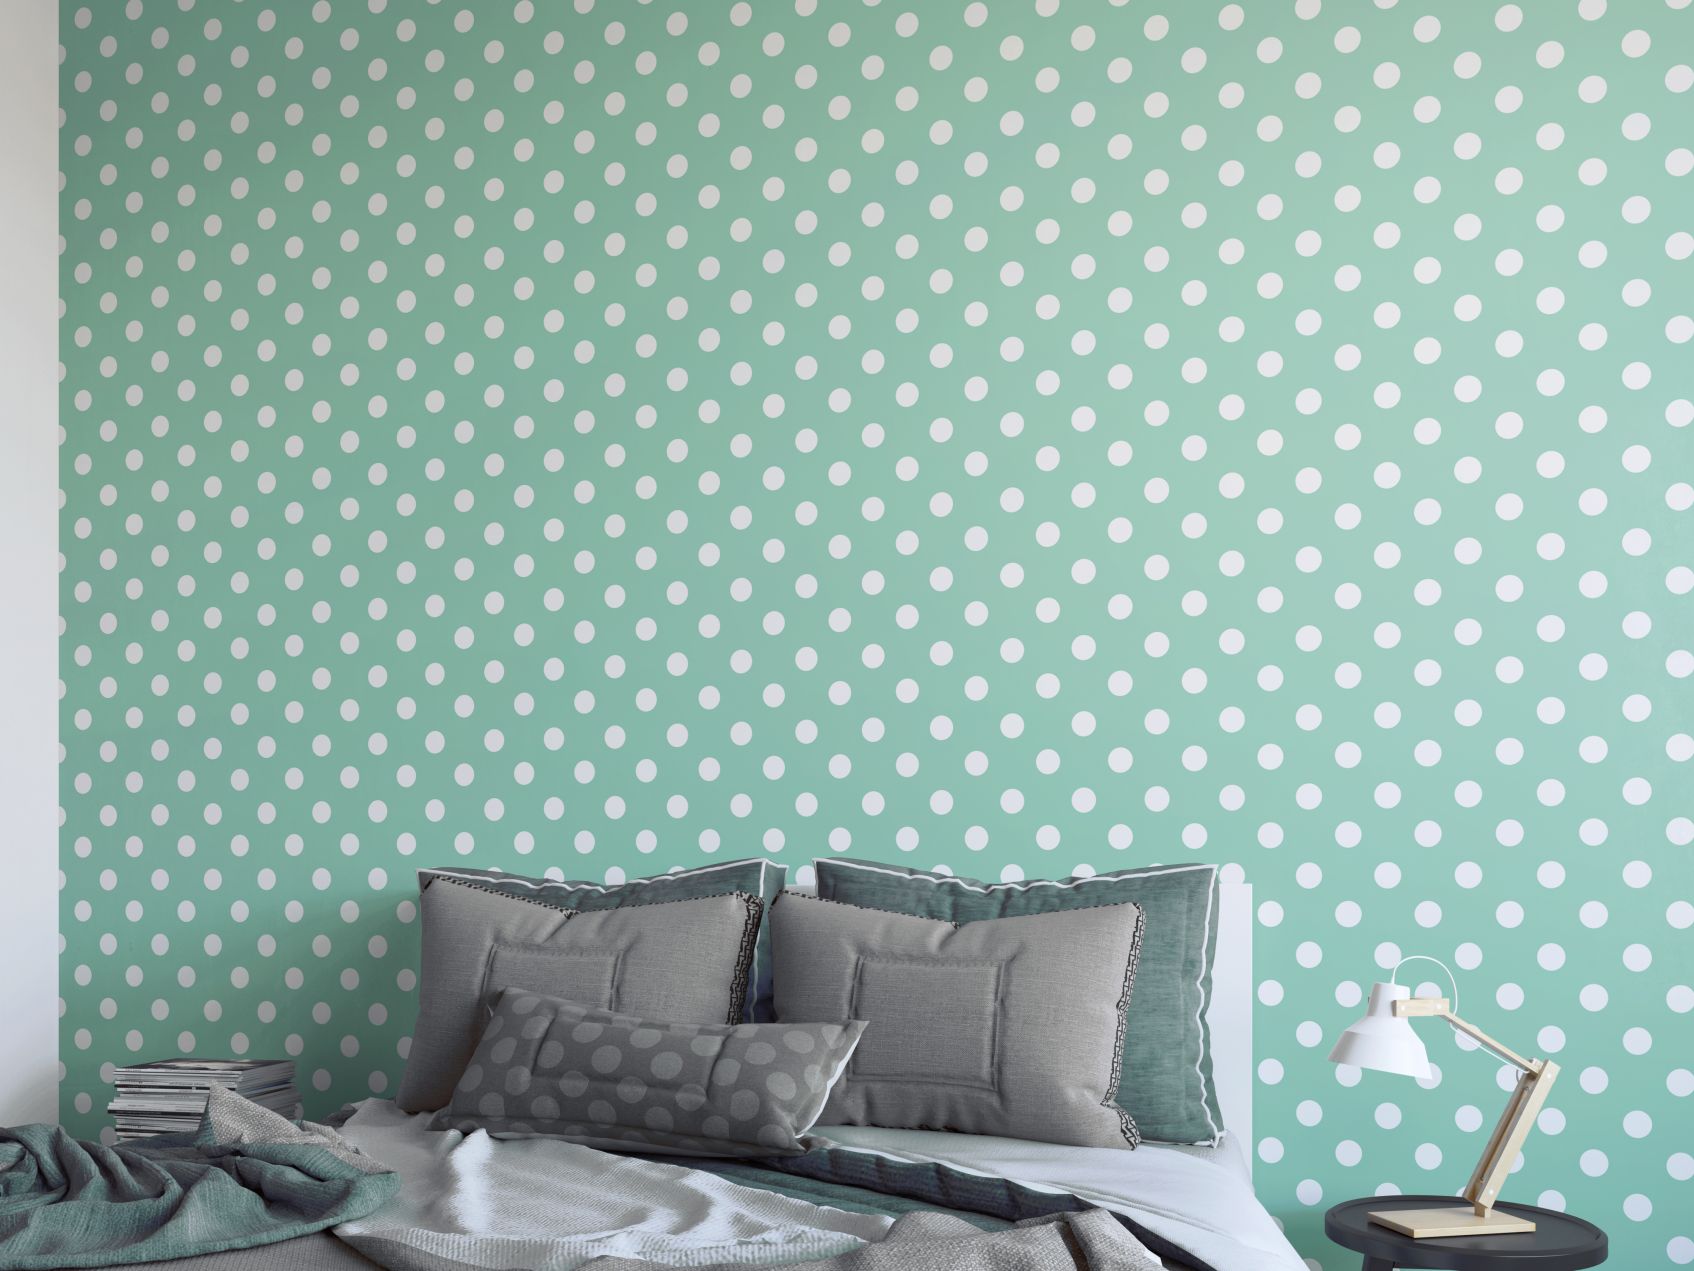 mietowa sypialnia 13 pomyslow sypialnia kolory aranzacje inspiracje zdjecia dekoportal